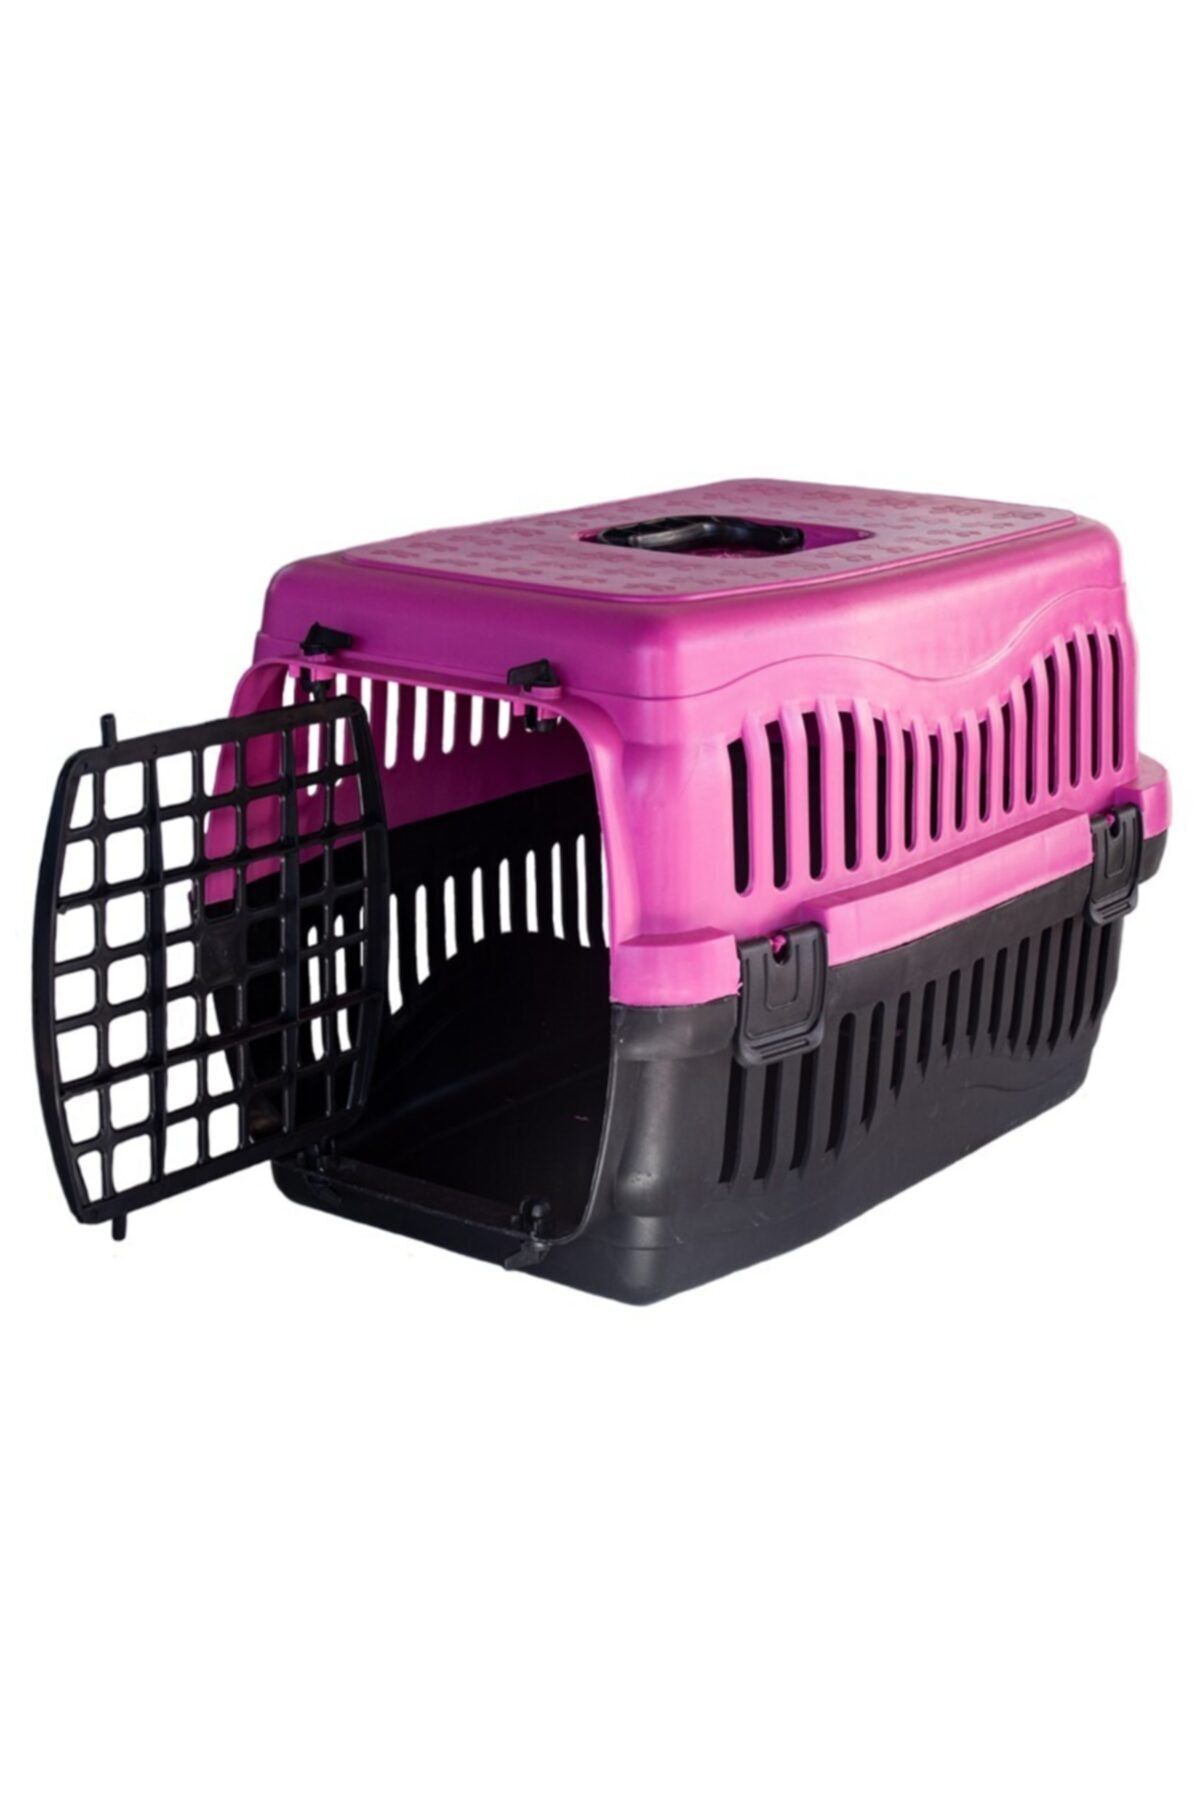 Apco Kedi Köpek Kemirgen Taşıma Çantası Box